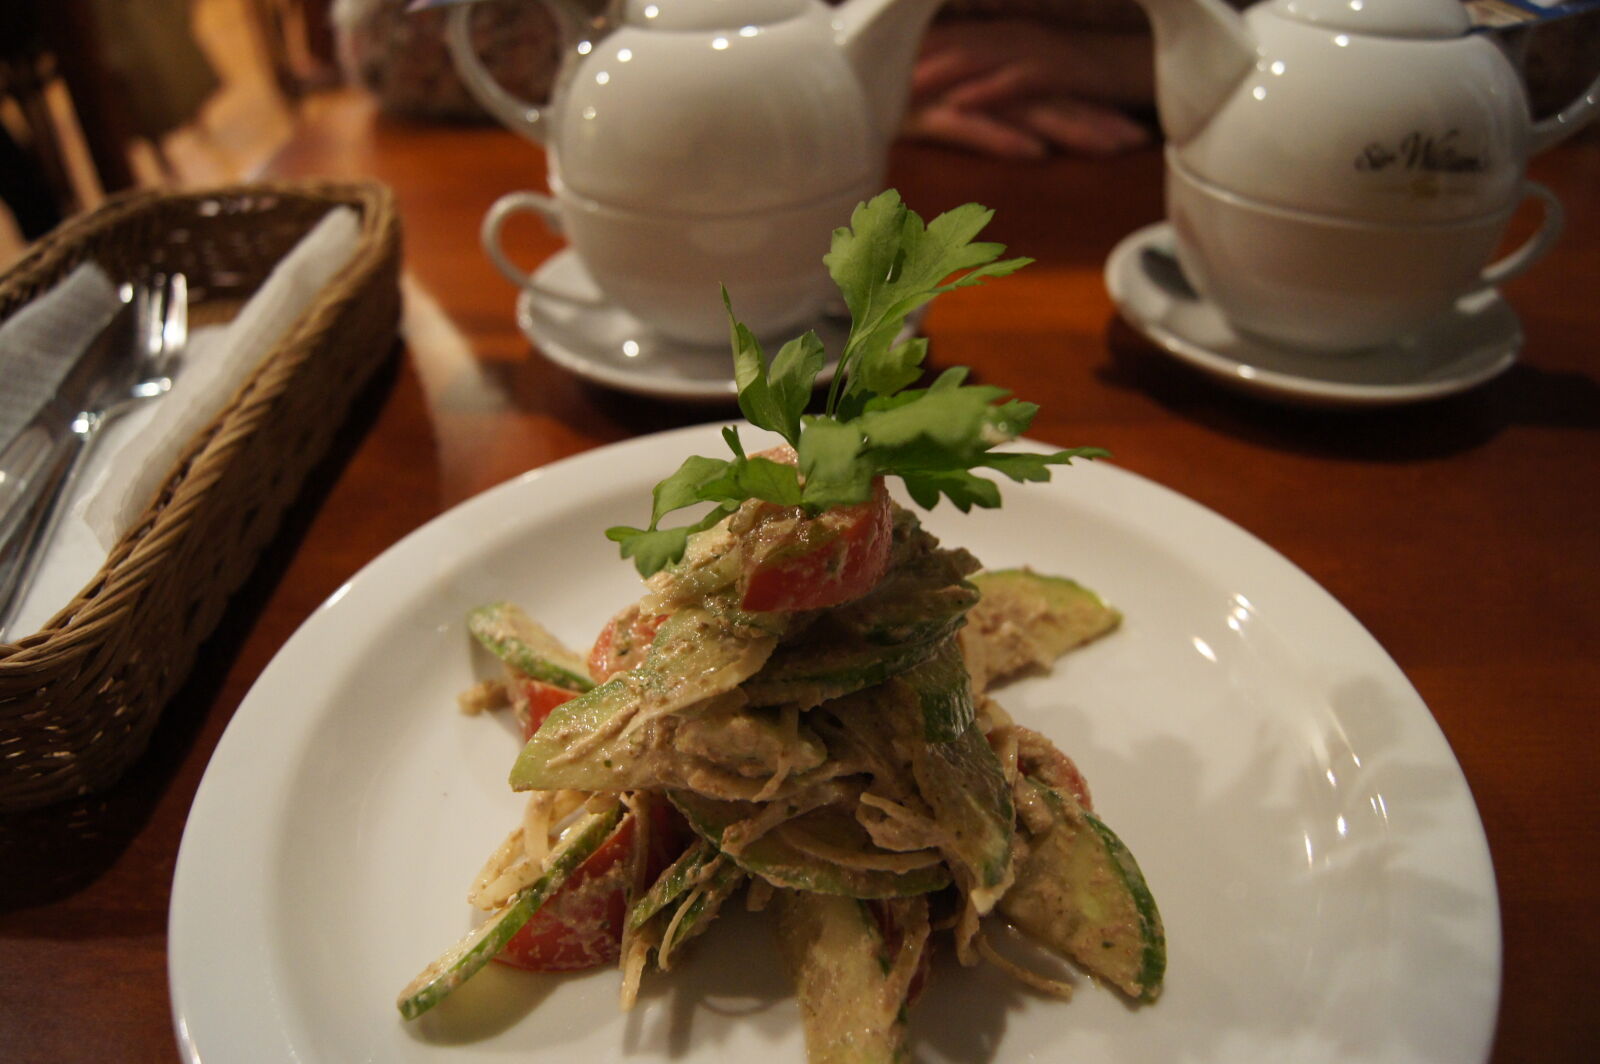 Sony Alpha DSLR-A550 sample photo. Eat, restaurant, salad, tea photography